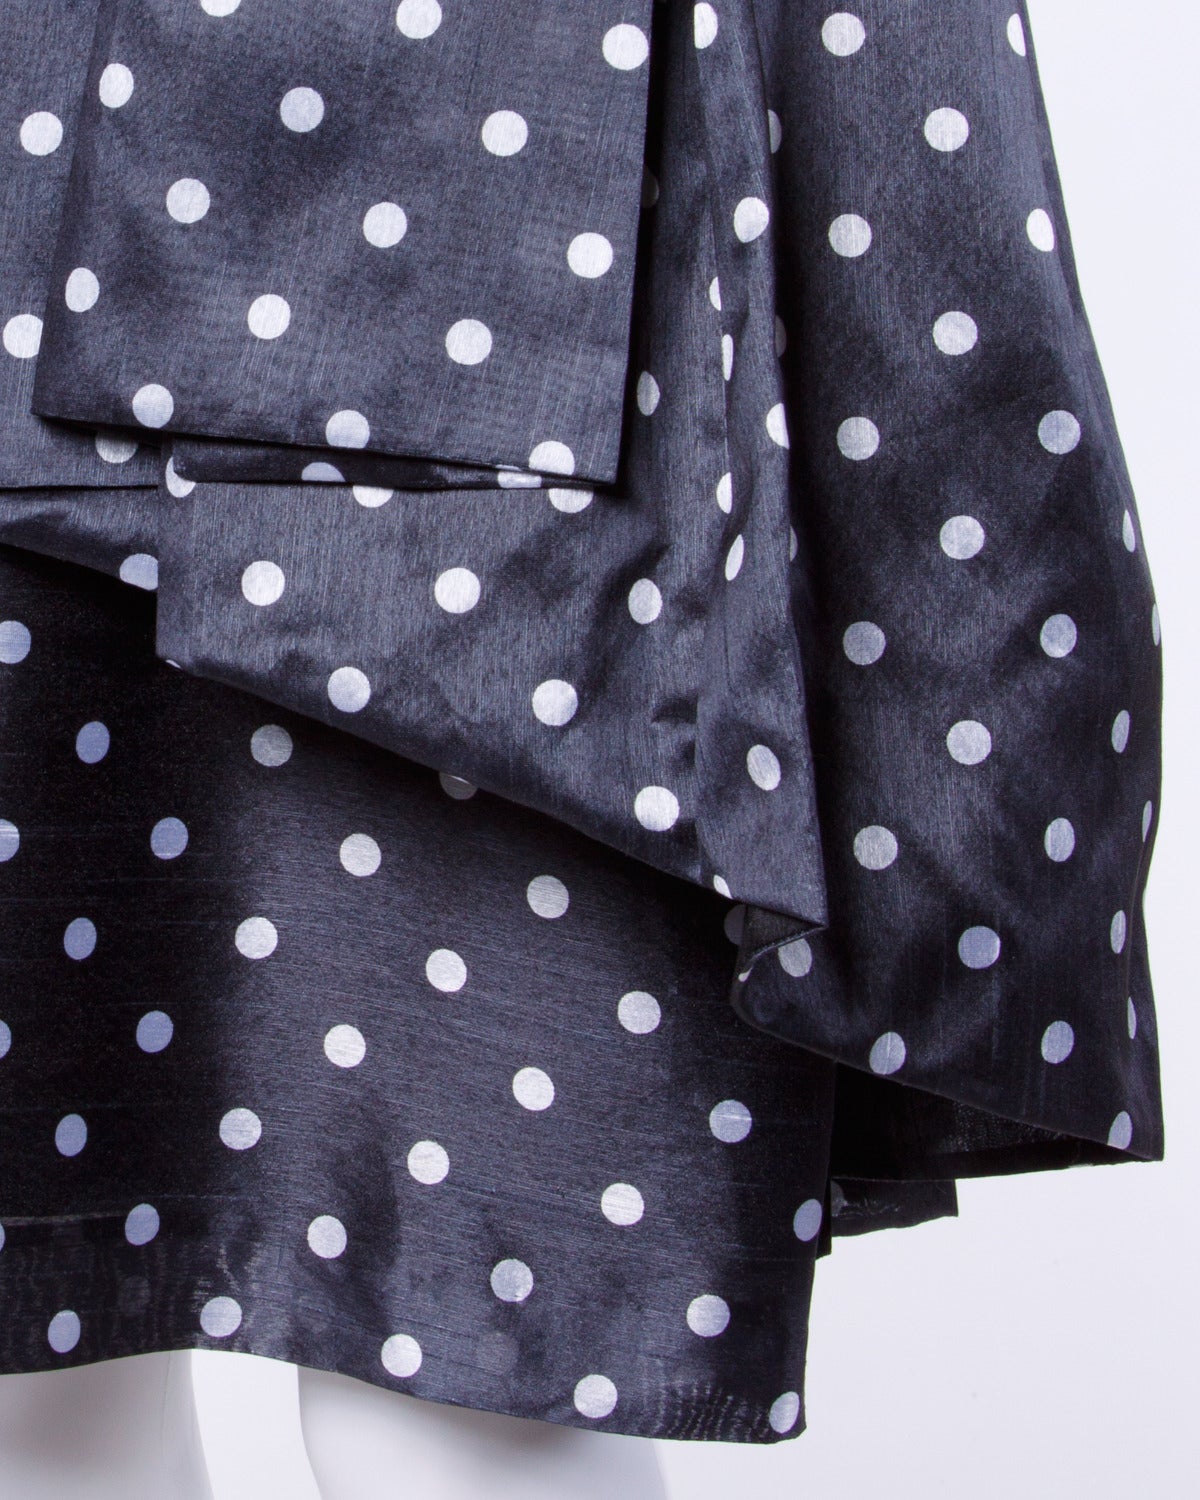 Women's Loris Azzaro Vintage Polka Dot Bustier Top + Skirt 2-Piece Dress Ensemble